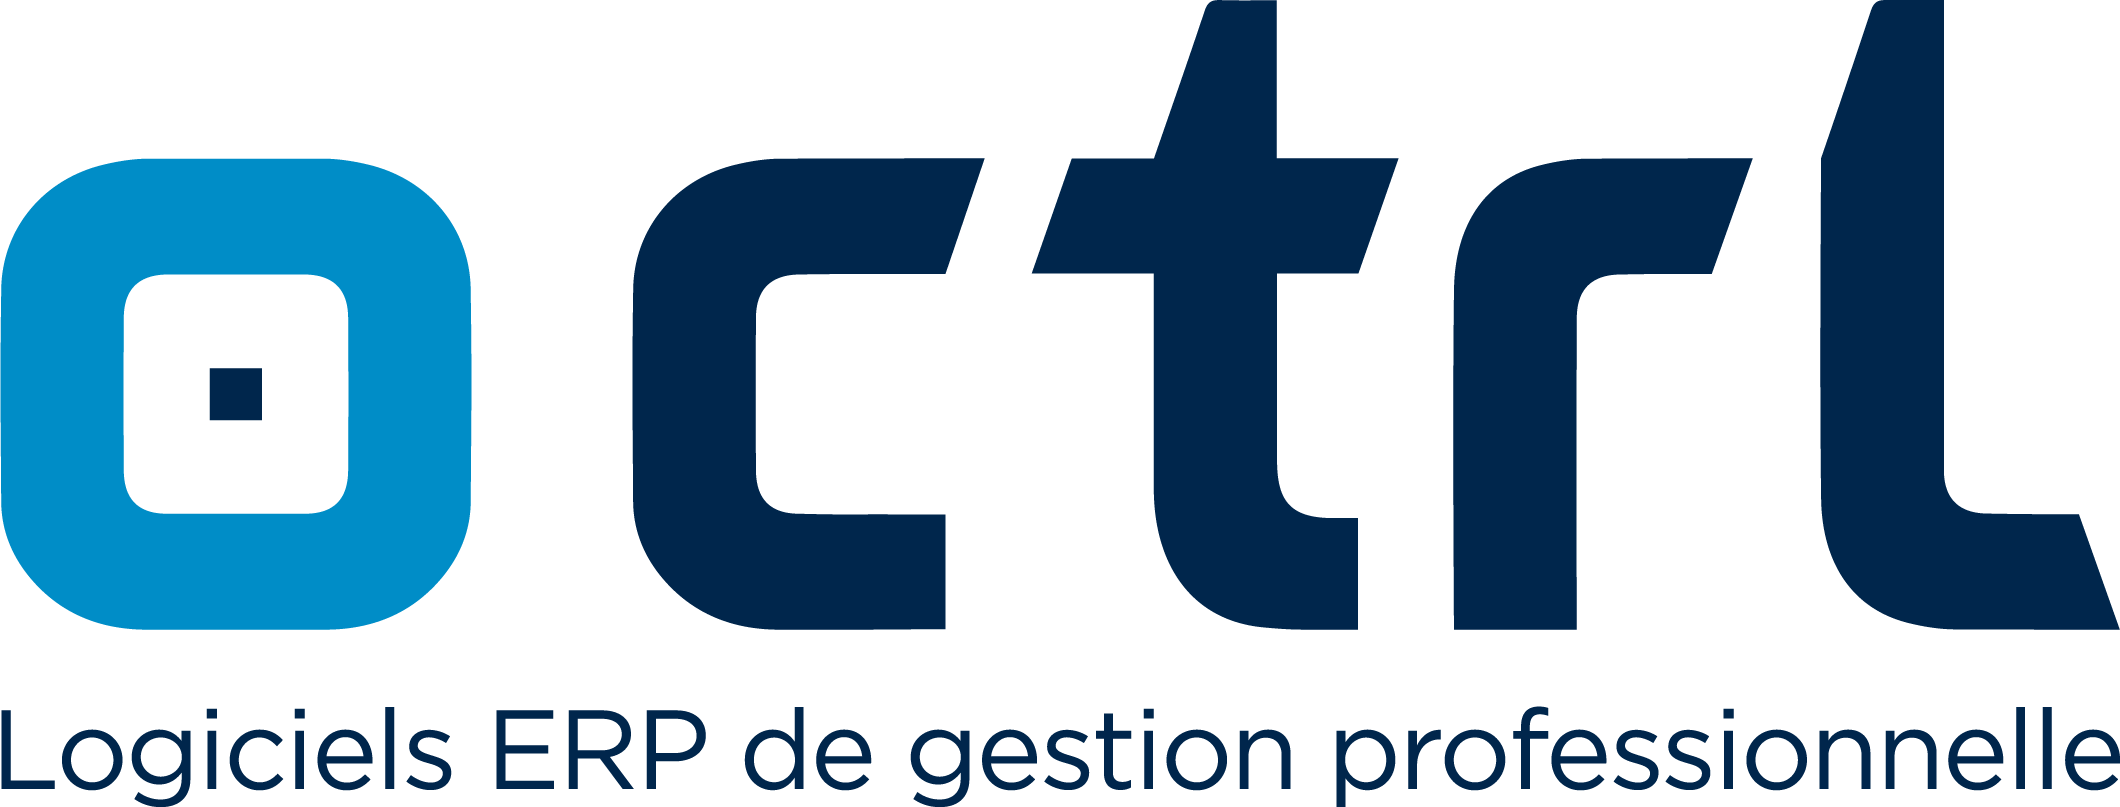 CTRL_Logo&Slogan_Fr.png